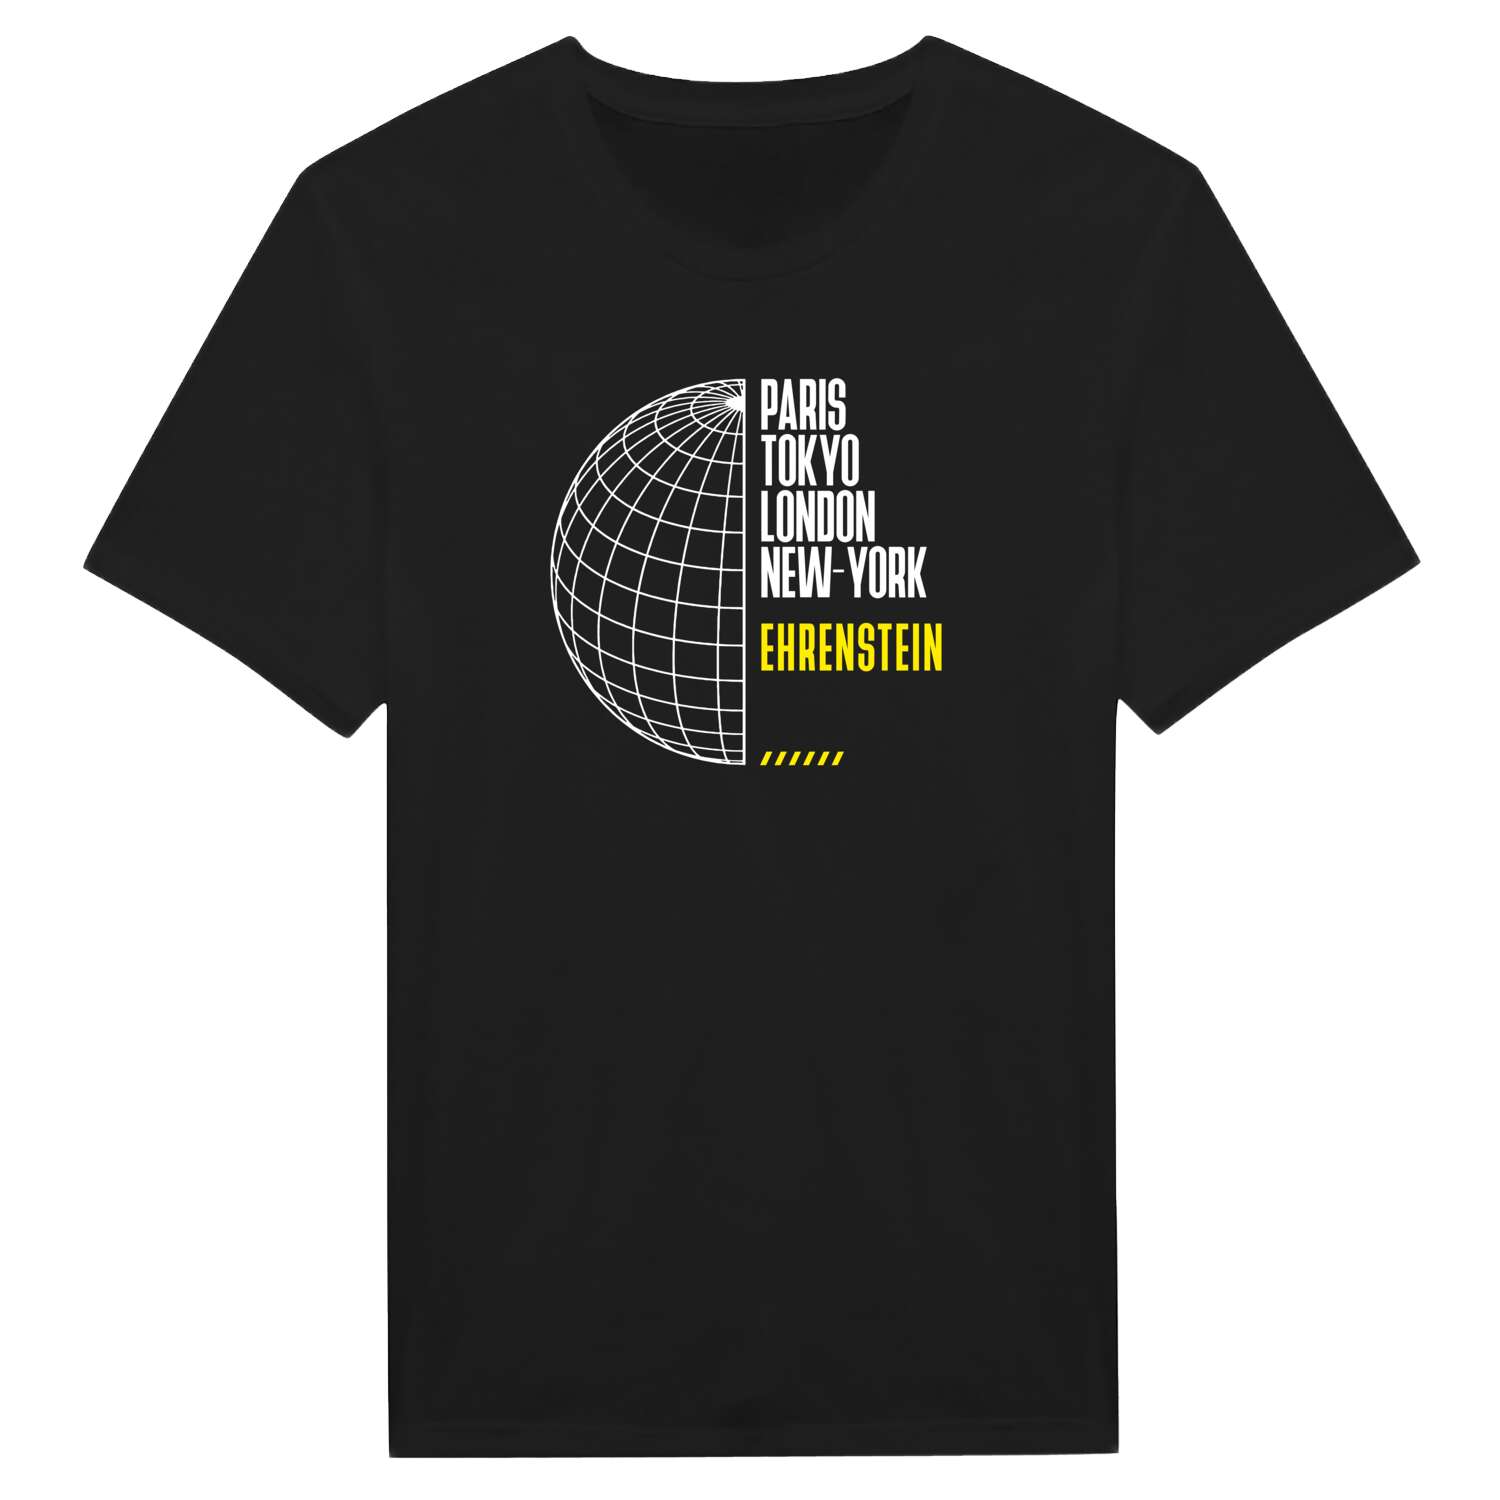 Ehrenstein T-Shirt »Paris Tokyo London«